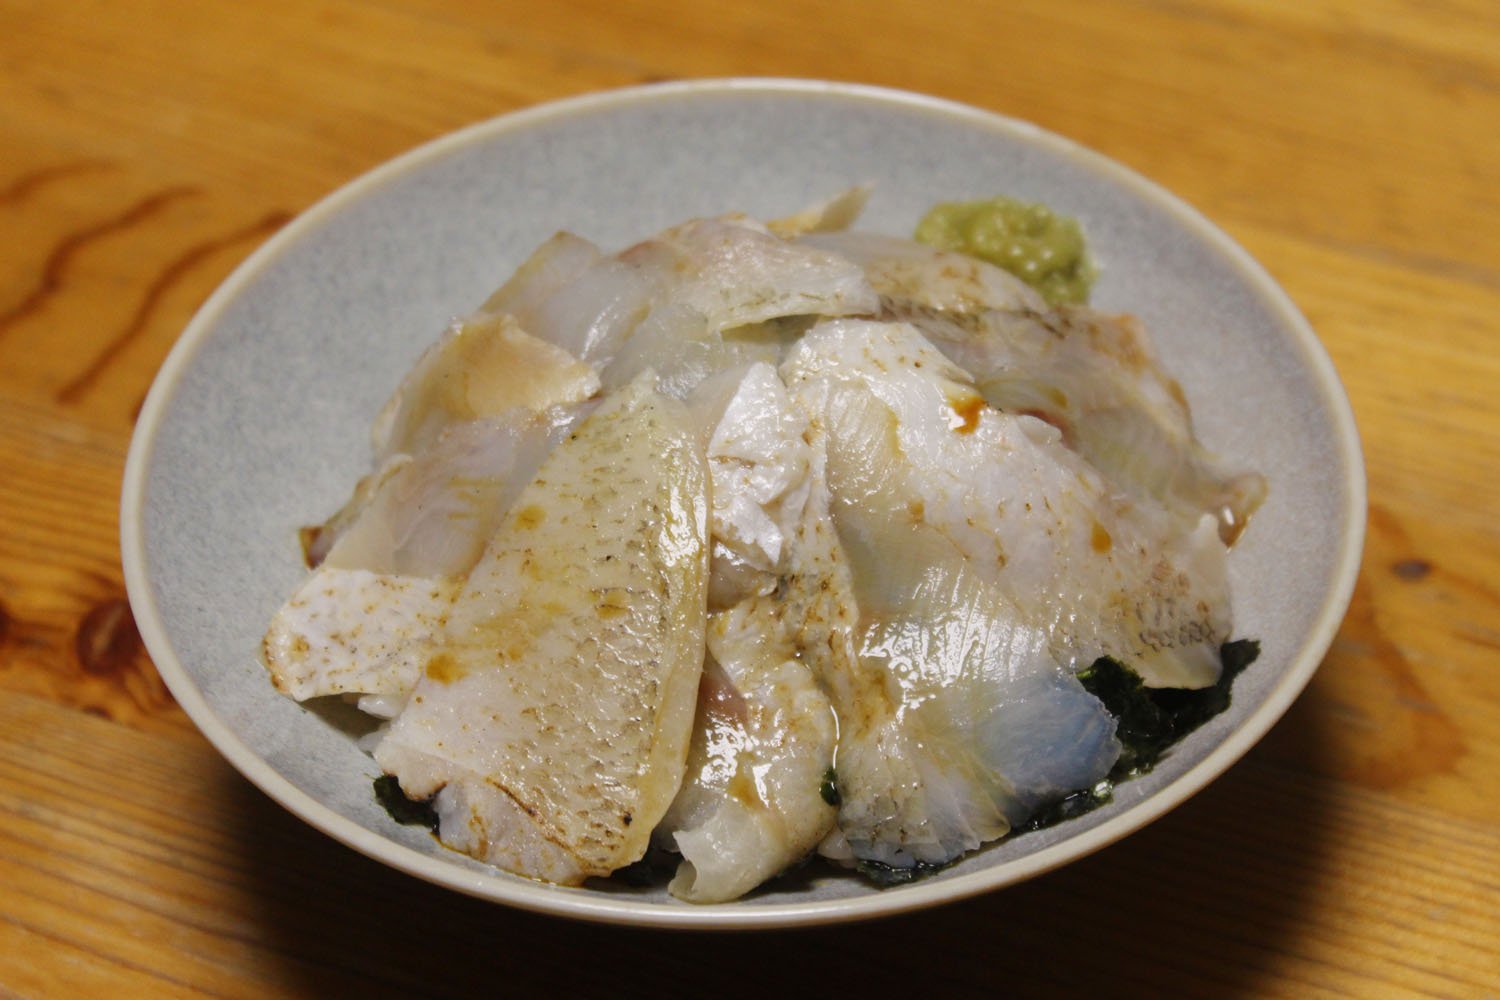 のどぐろ丼のネタ12枚入り(1296円)。ほかほかご飯に海苔をちぎり入れて、盛り付けた。